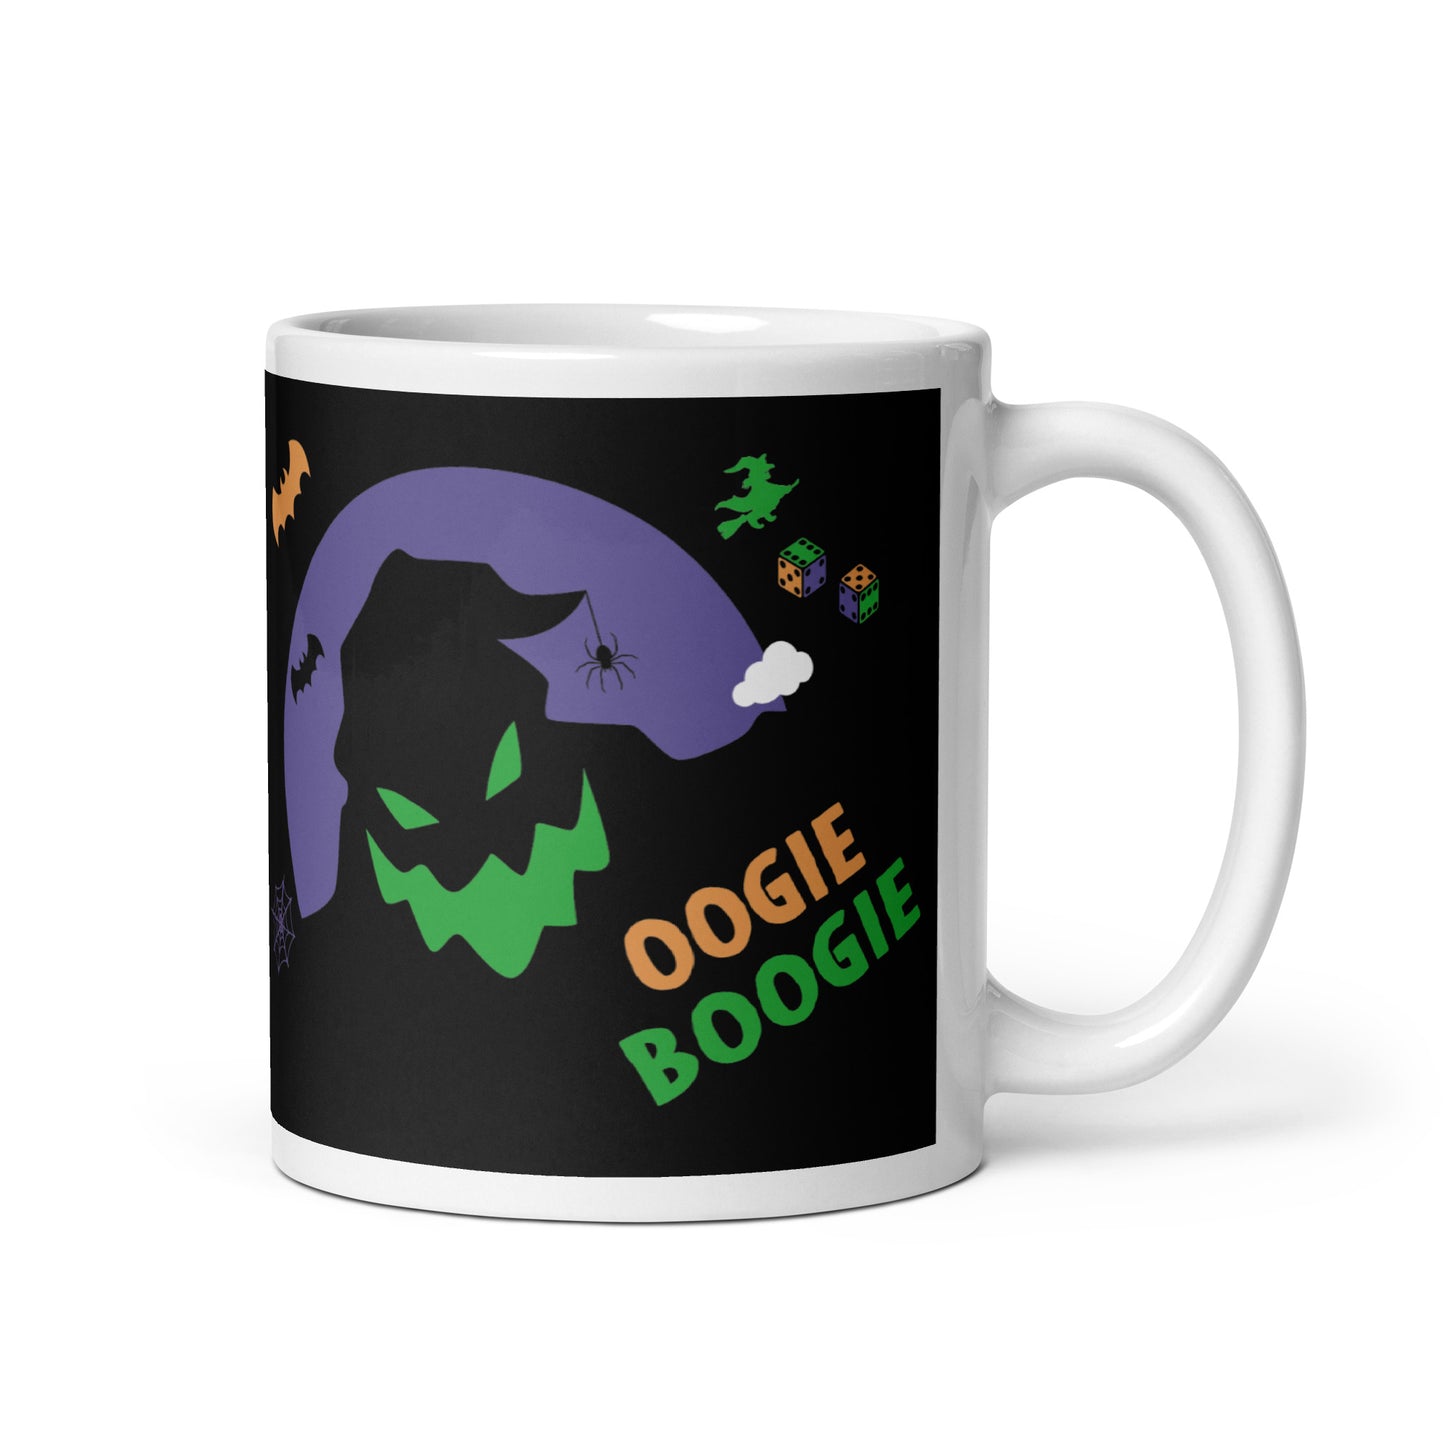 Oogie Boogie Mug